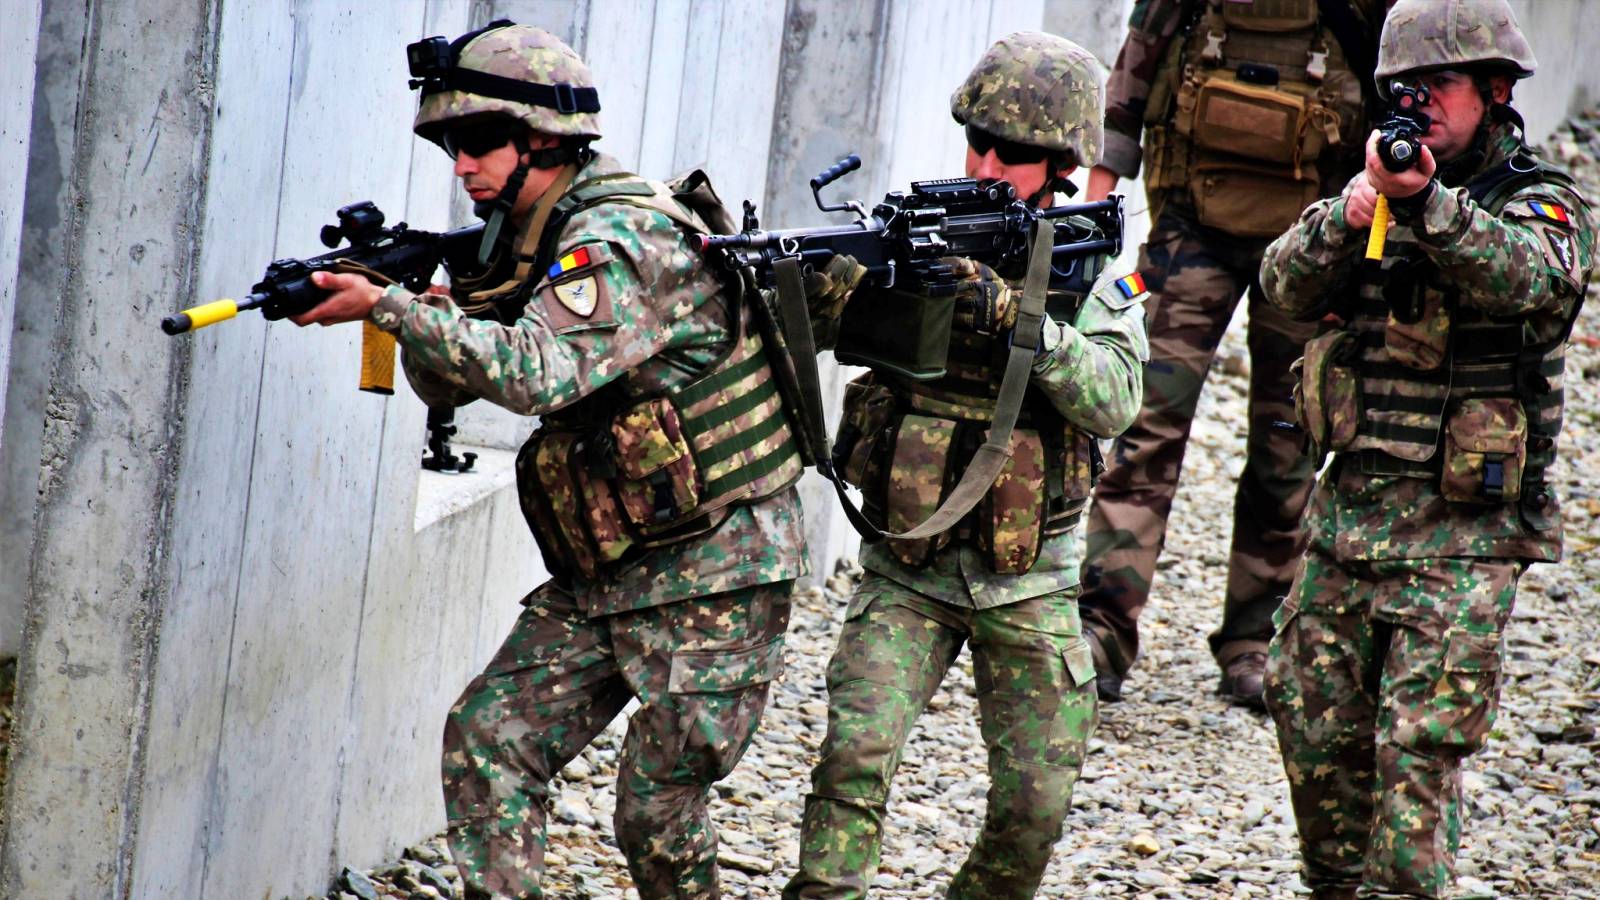 Ministerstwo Obrony Ważne oficjalne informacje W OSTATNIEJ CHWILI Działalność rumuńskich żołnierzy